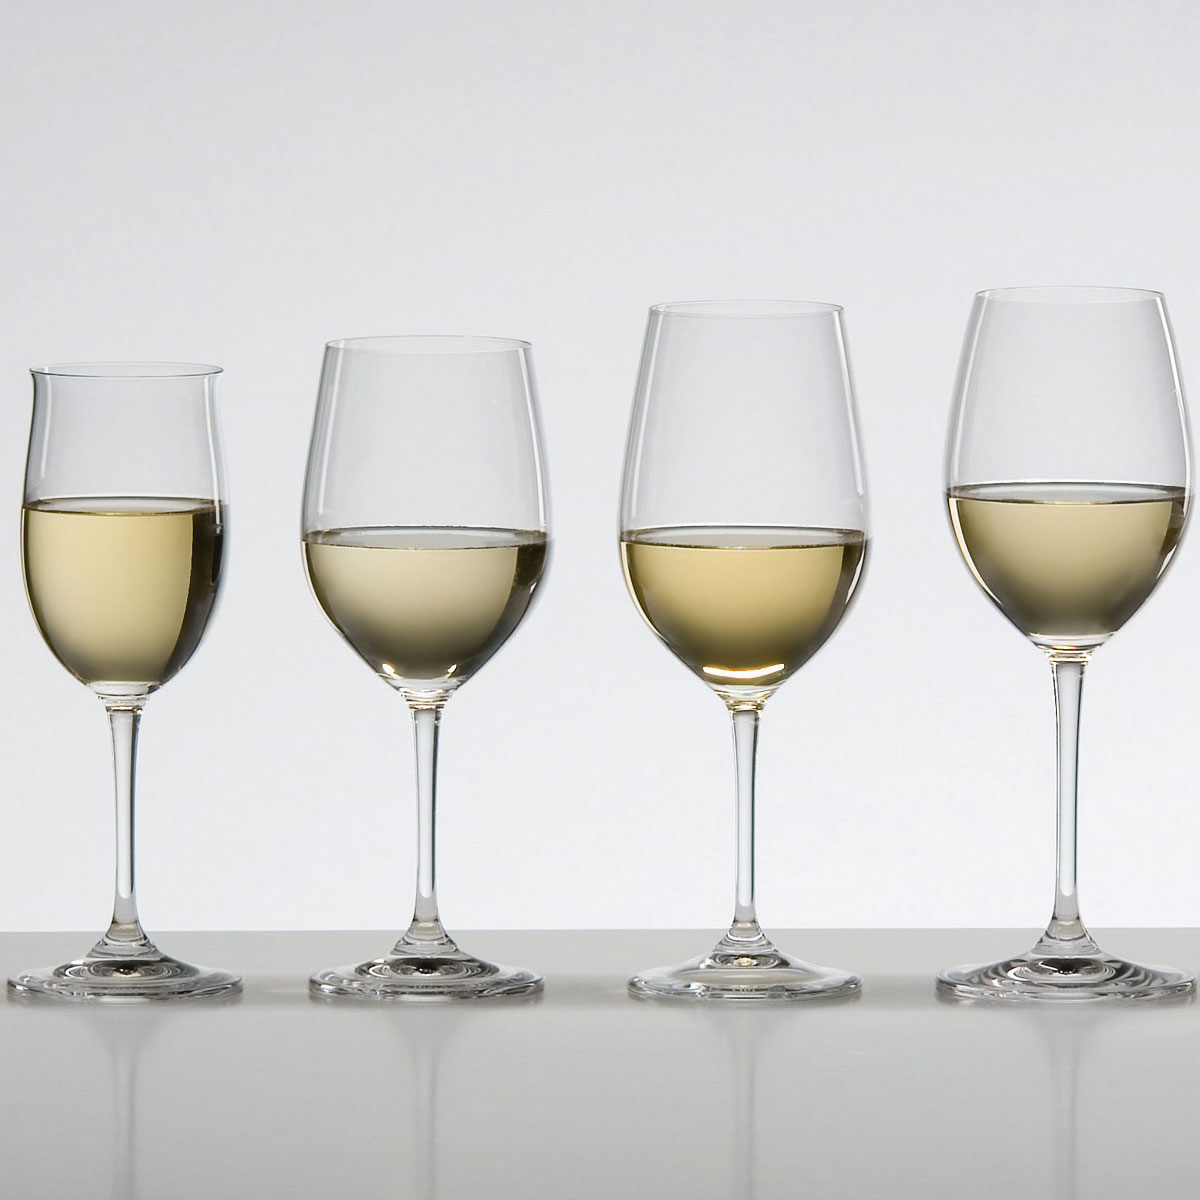 Riedel Vinum Chablis/Chardonnay Glasses, Clear, 12 oz - 2 count